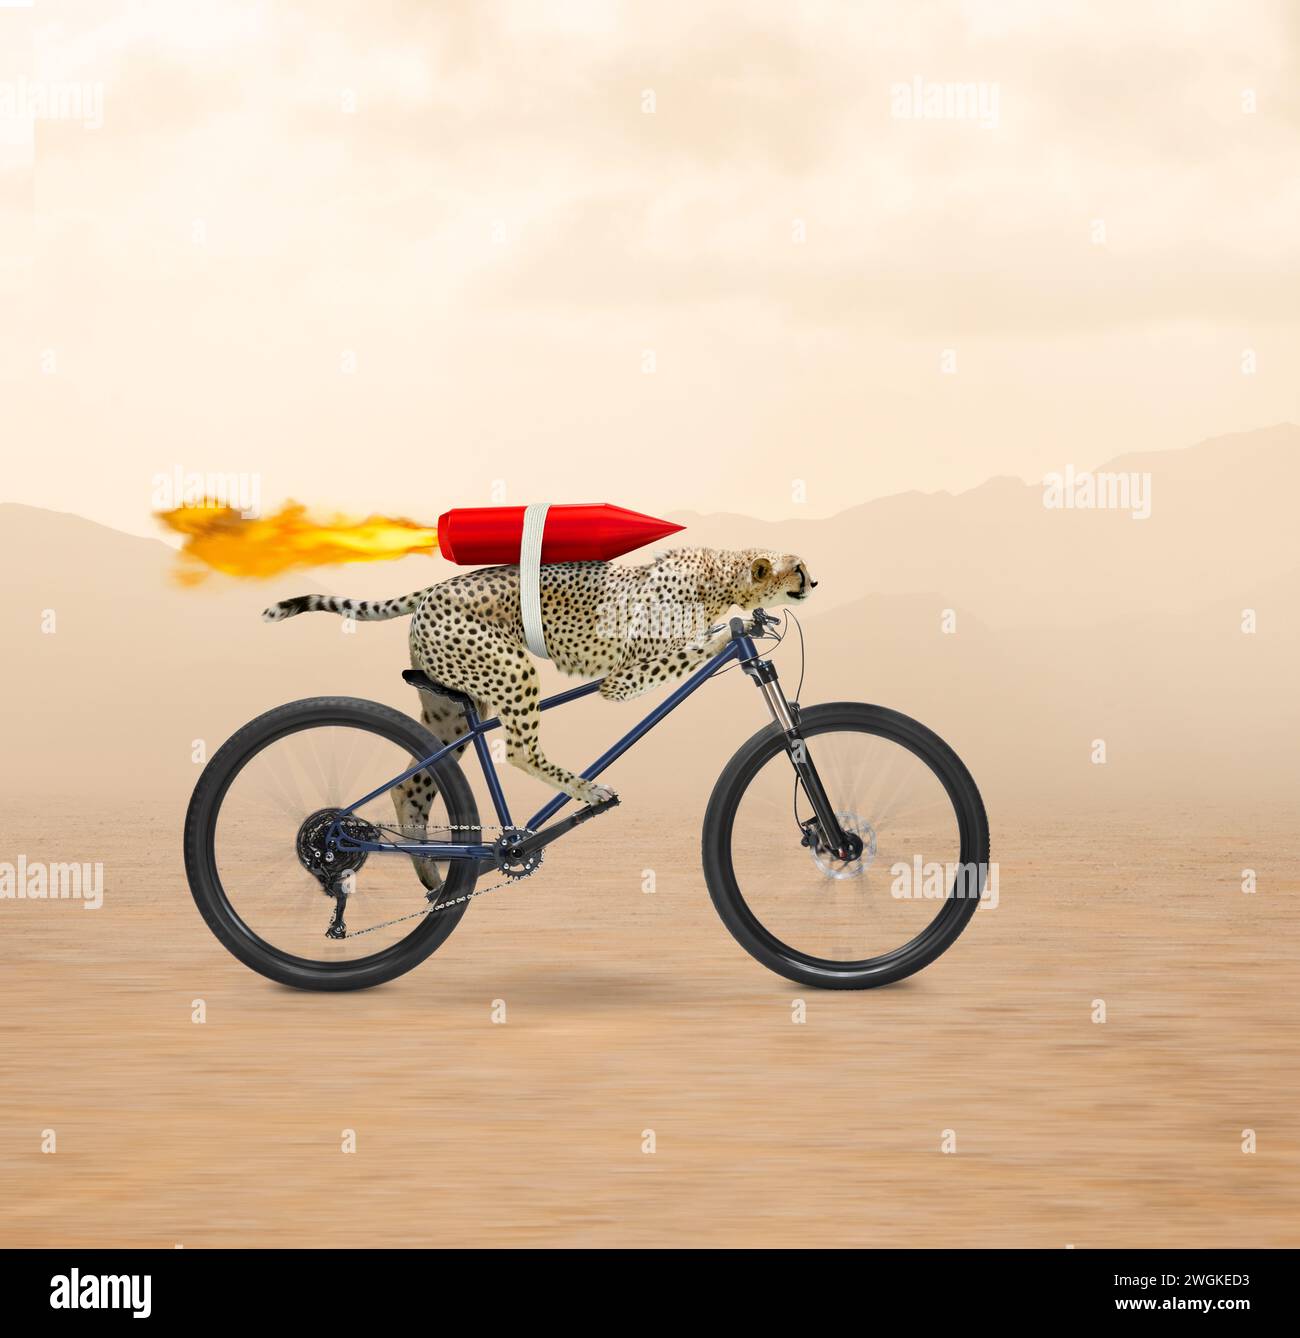 Un drôle de guépard a une fusée accrochée à son dos alors qu'il roule à travers la terre sur un vélo dans une image sur la vitesse, la technologie et l'innovation. Banque D'Images